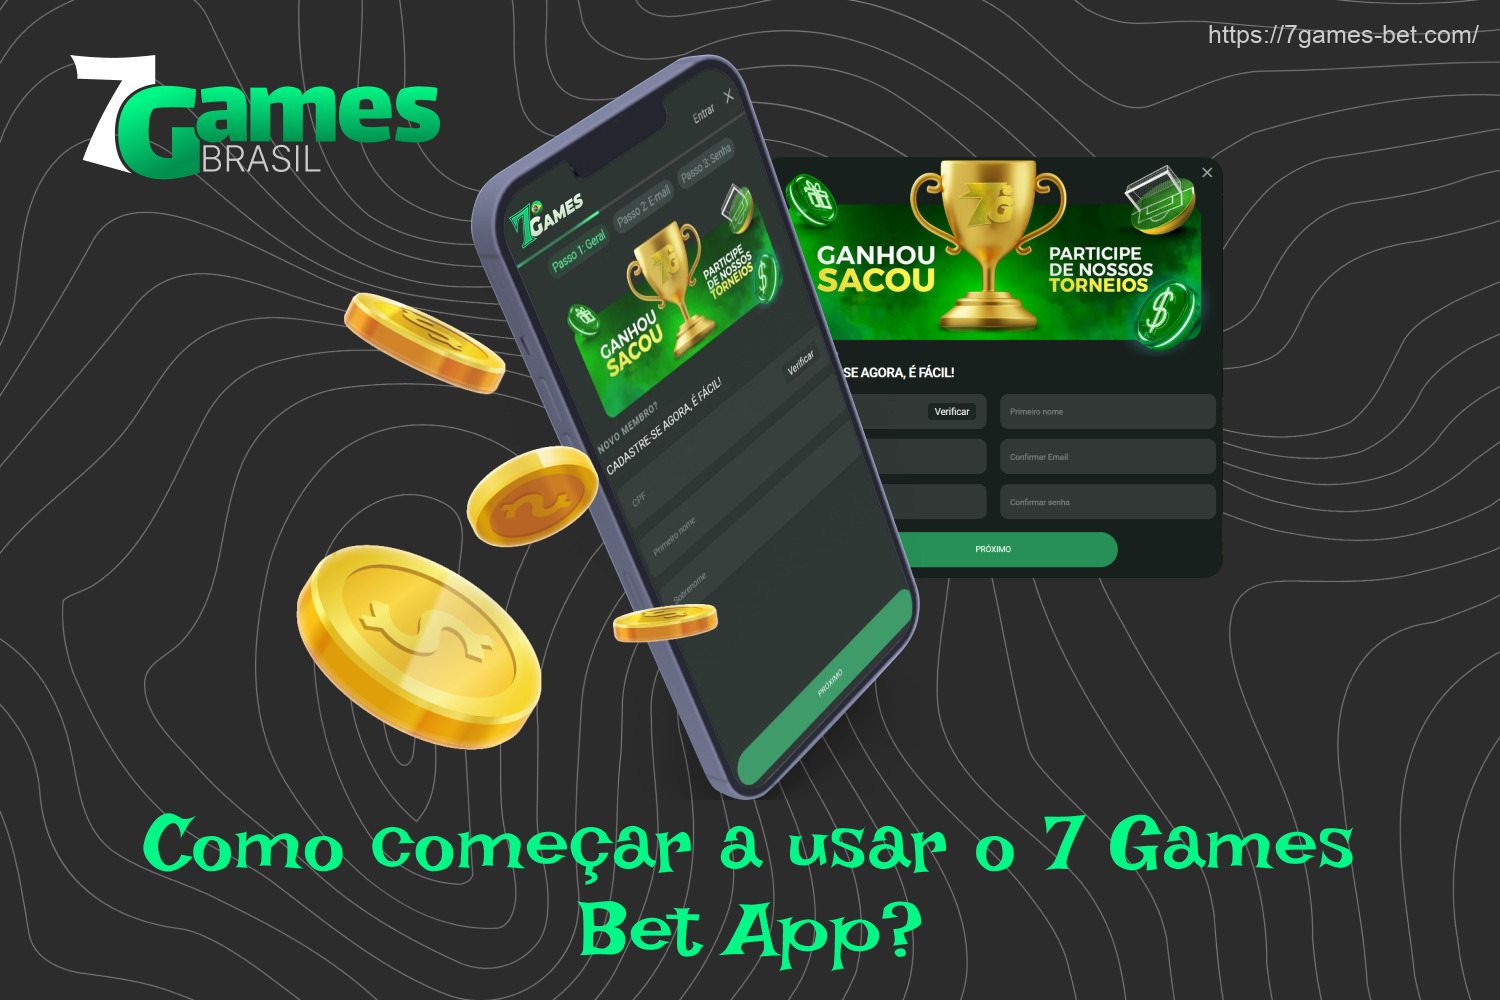 Para começar a usar o aplicativo 7Games, você precisa se registrar, fazer um depósito e selecionar um evento para apostar